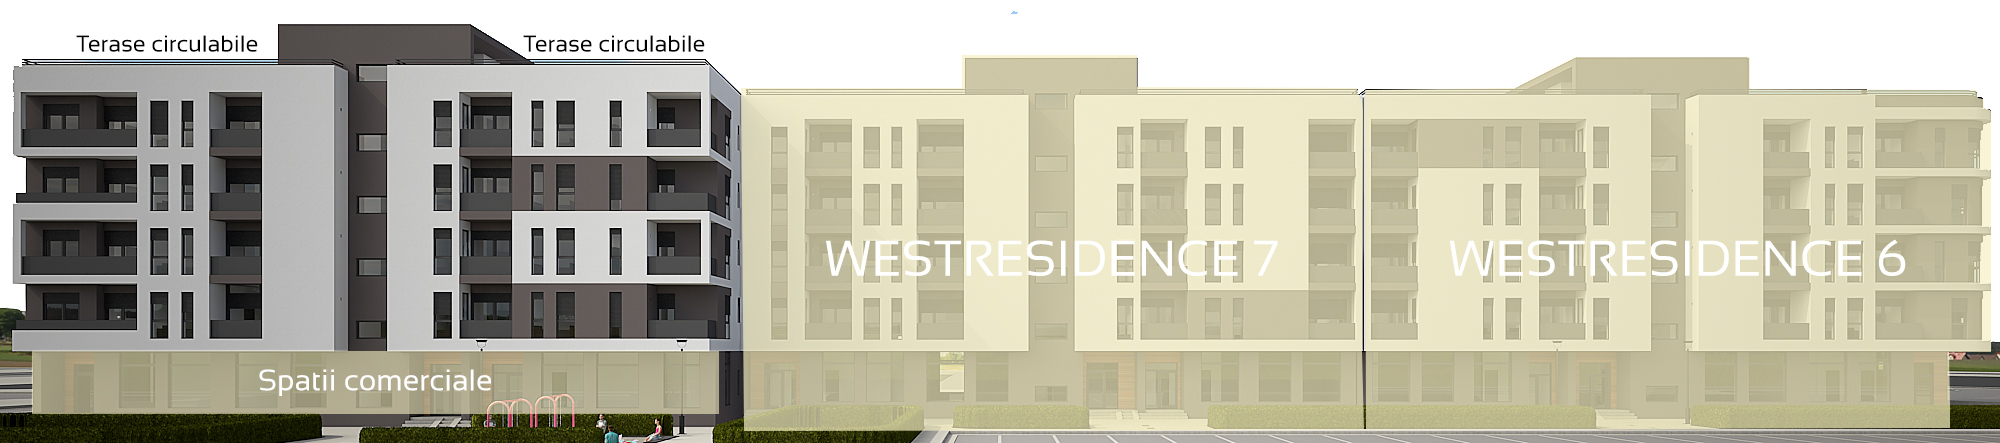 WestResidence 8 | Flat